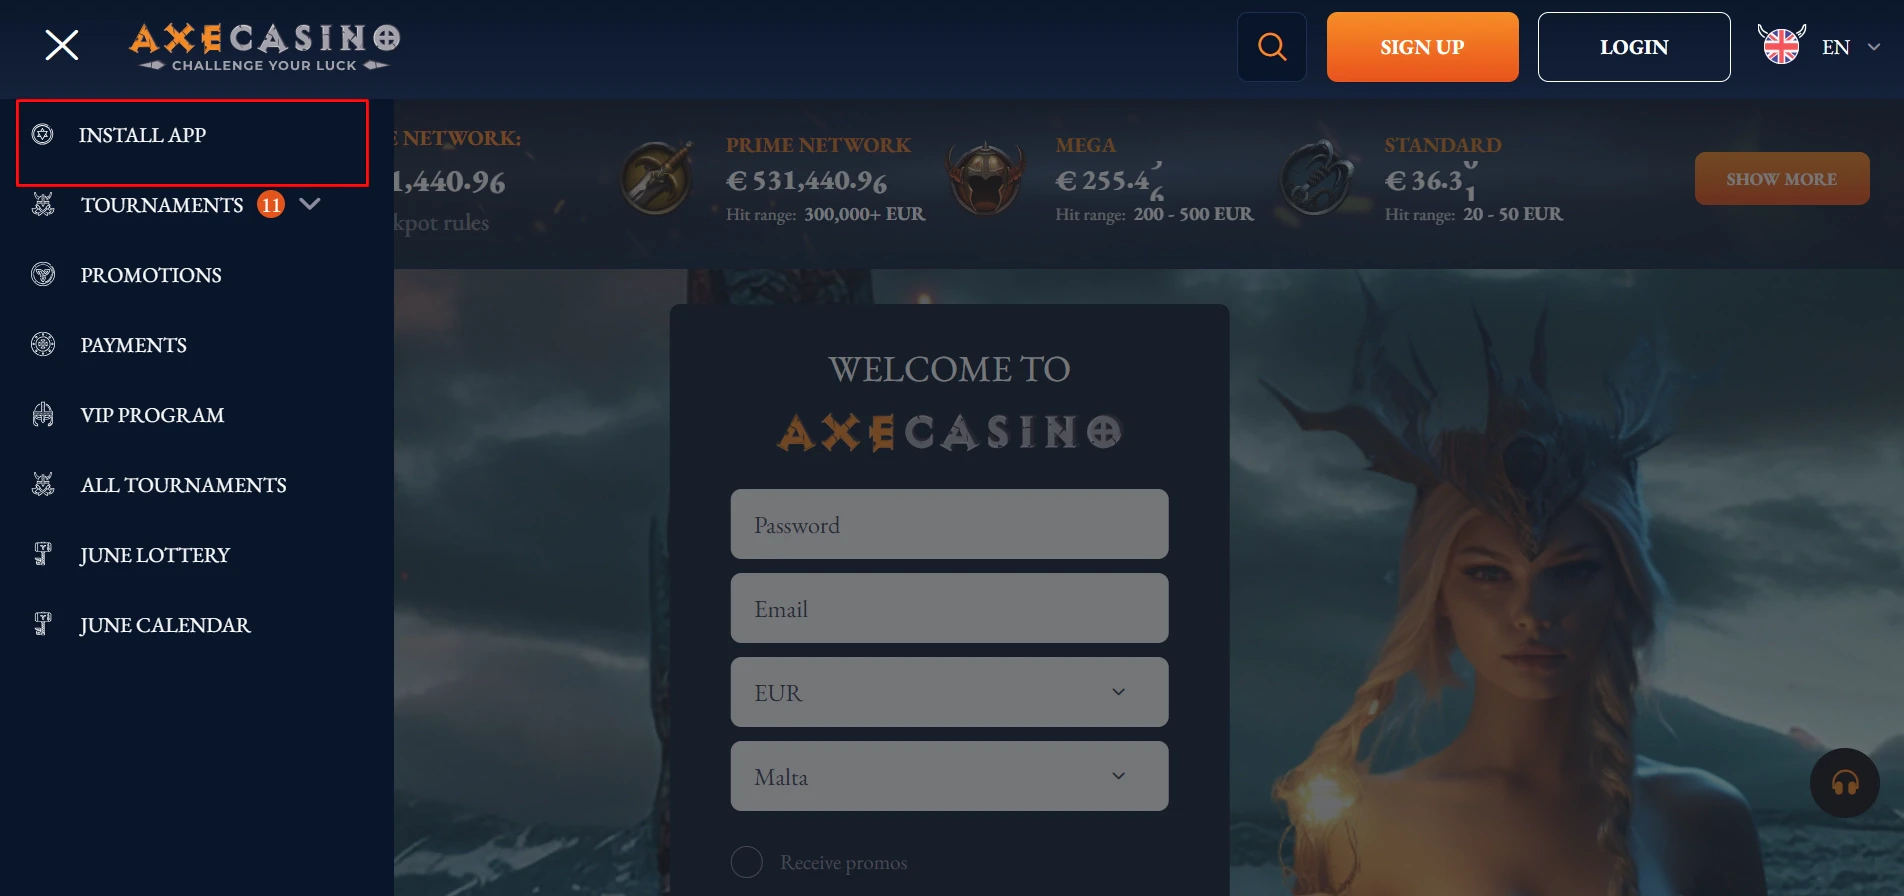 Axe Casino mobile app